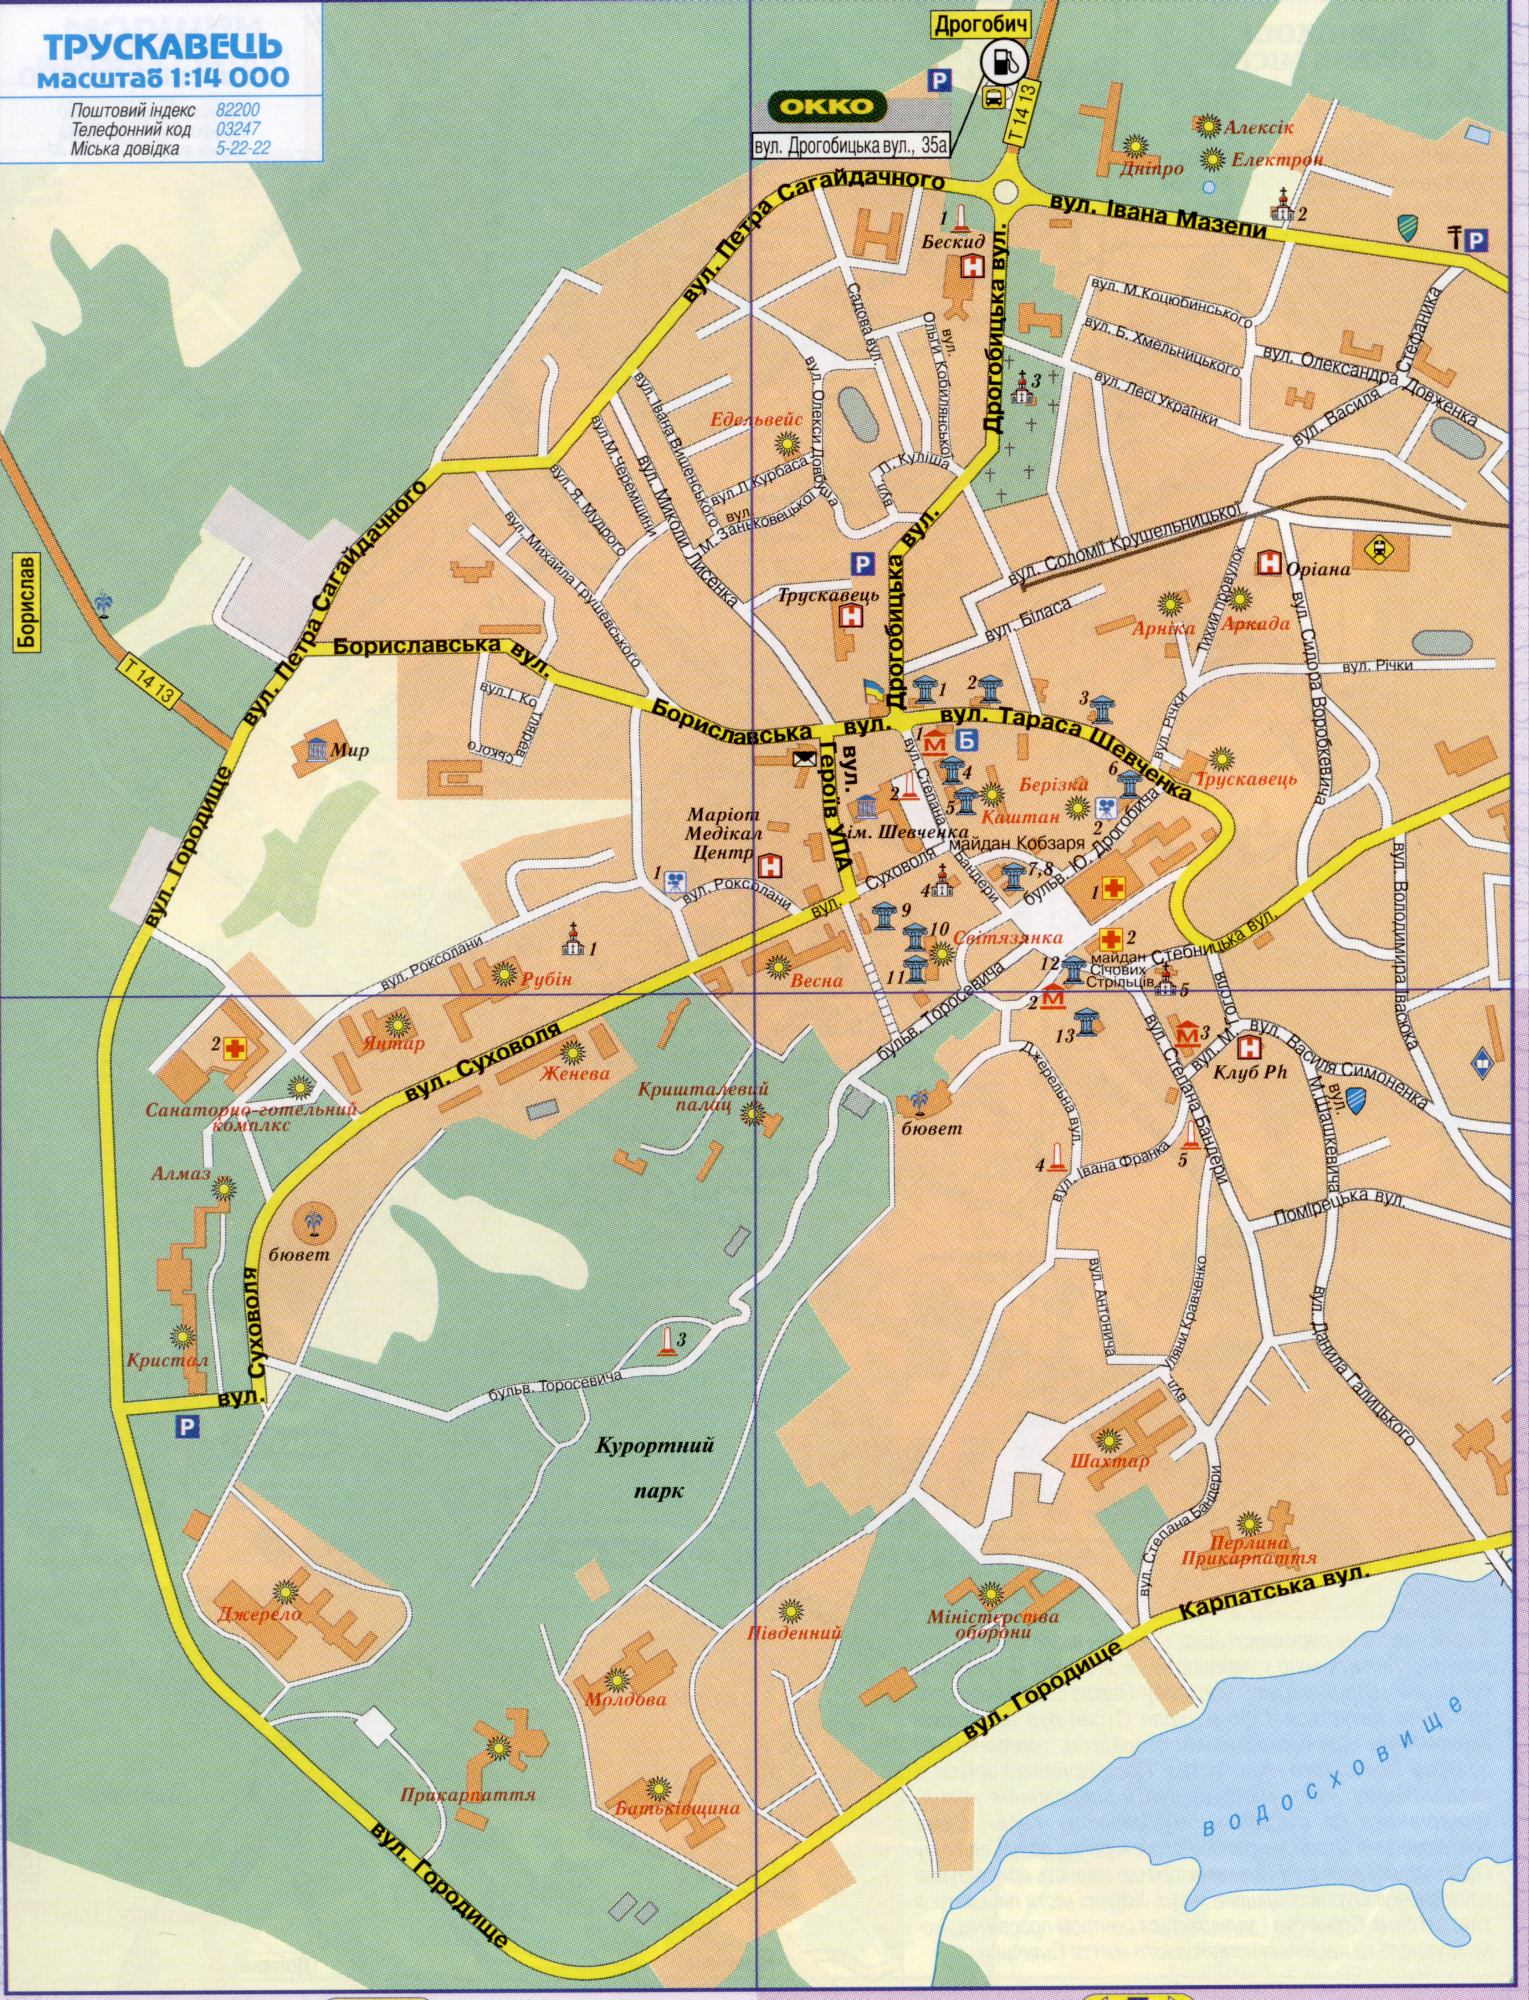 Карта Трускавца. Подробная карта г.Трускавец Львовской области масштаба 1см=140метров. Скачать бесплатно подробную карту автомобильных дорог